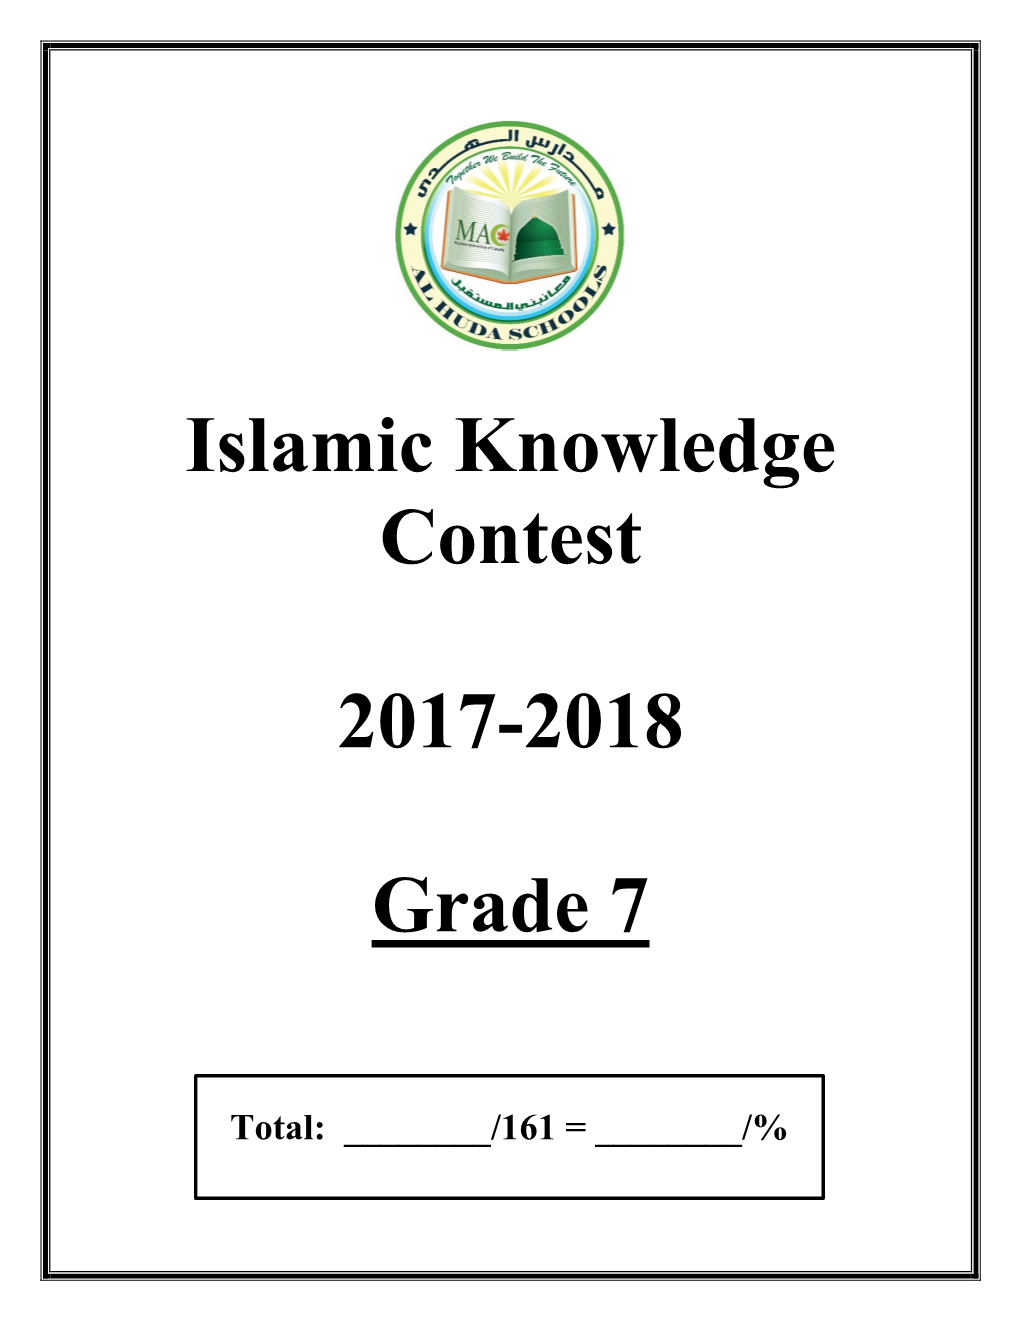 Islamic Knowledge Contest 2017-2018 Grade 7